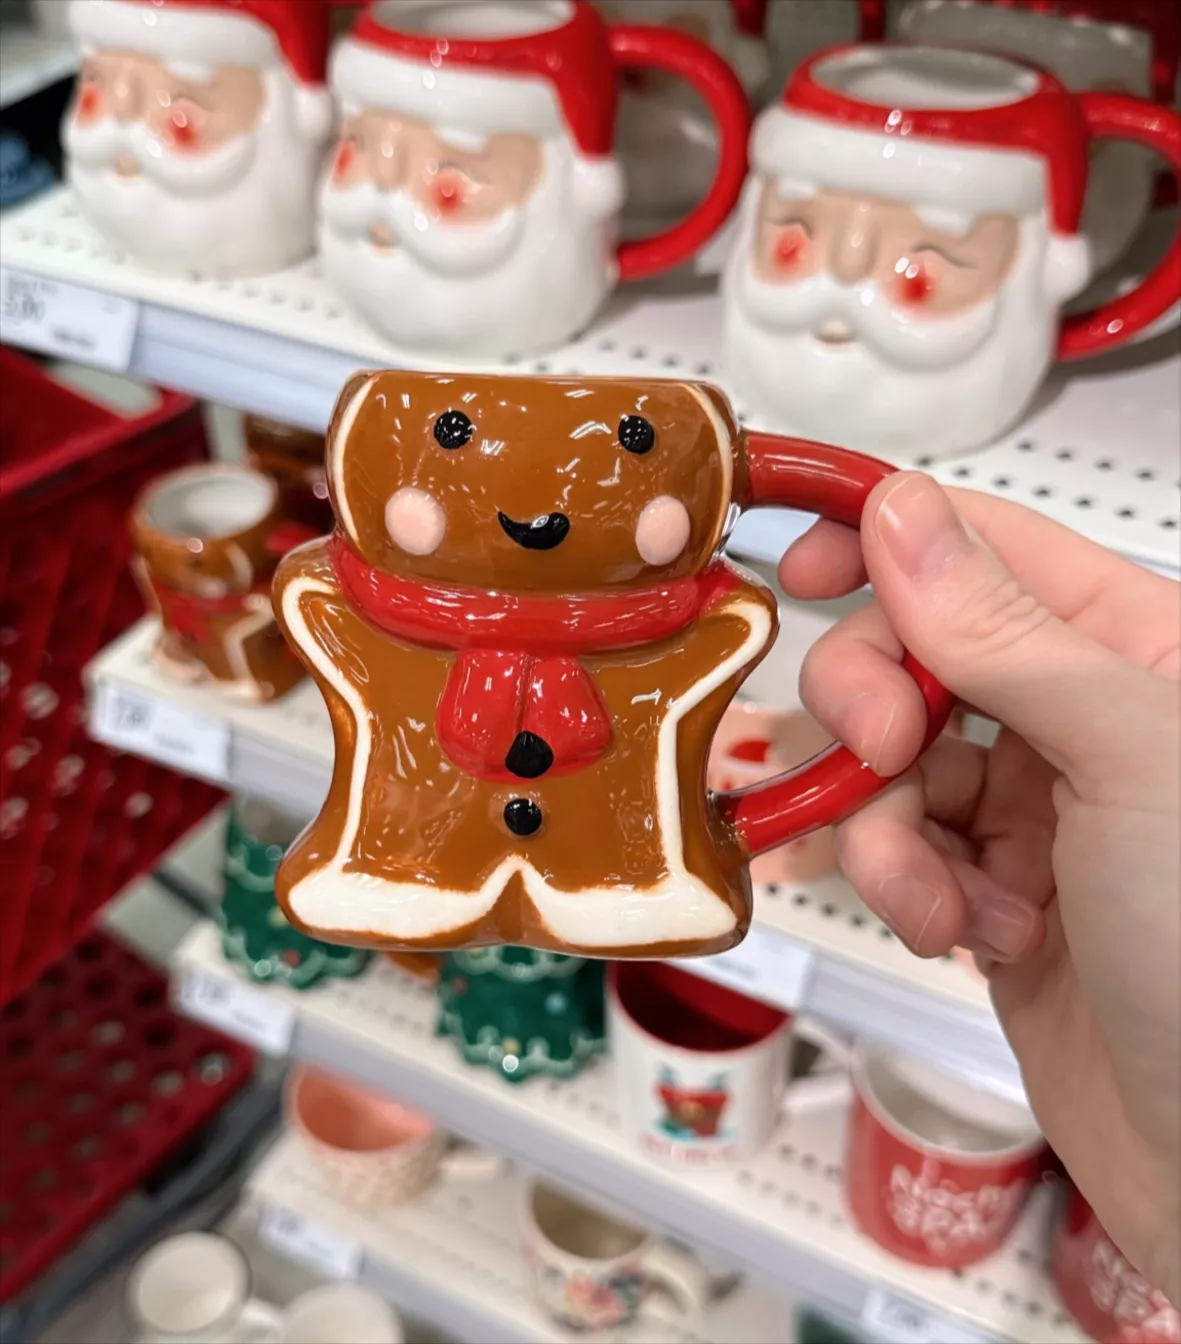 Festive Christmas Coffee Mug - Only $5 at Target